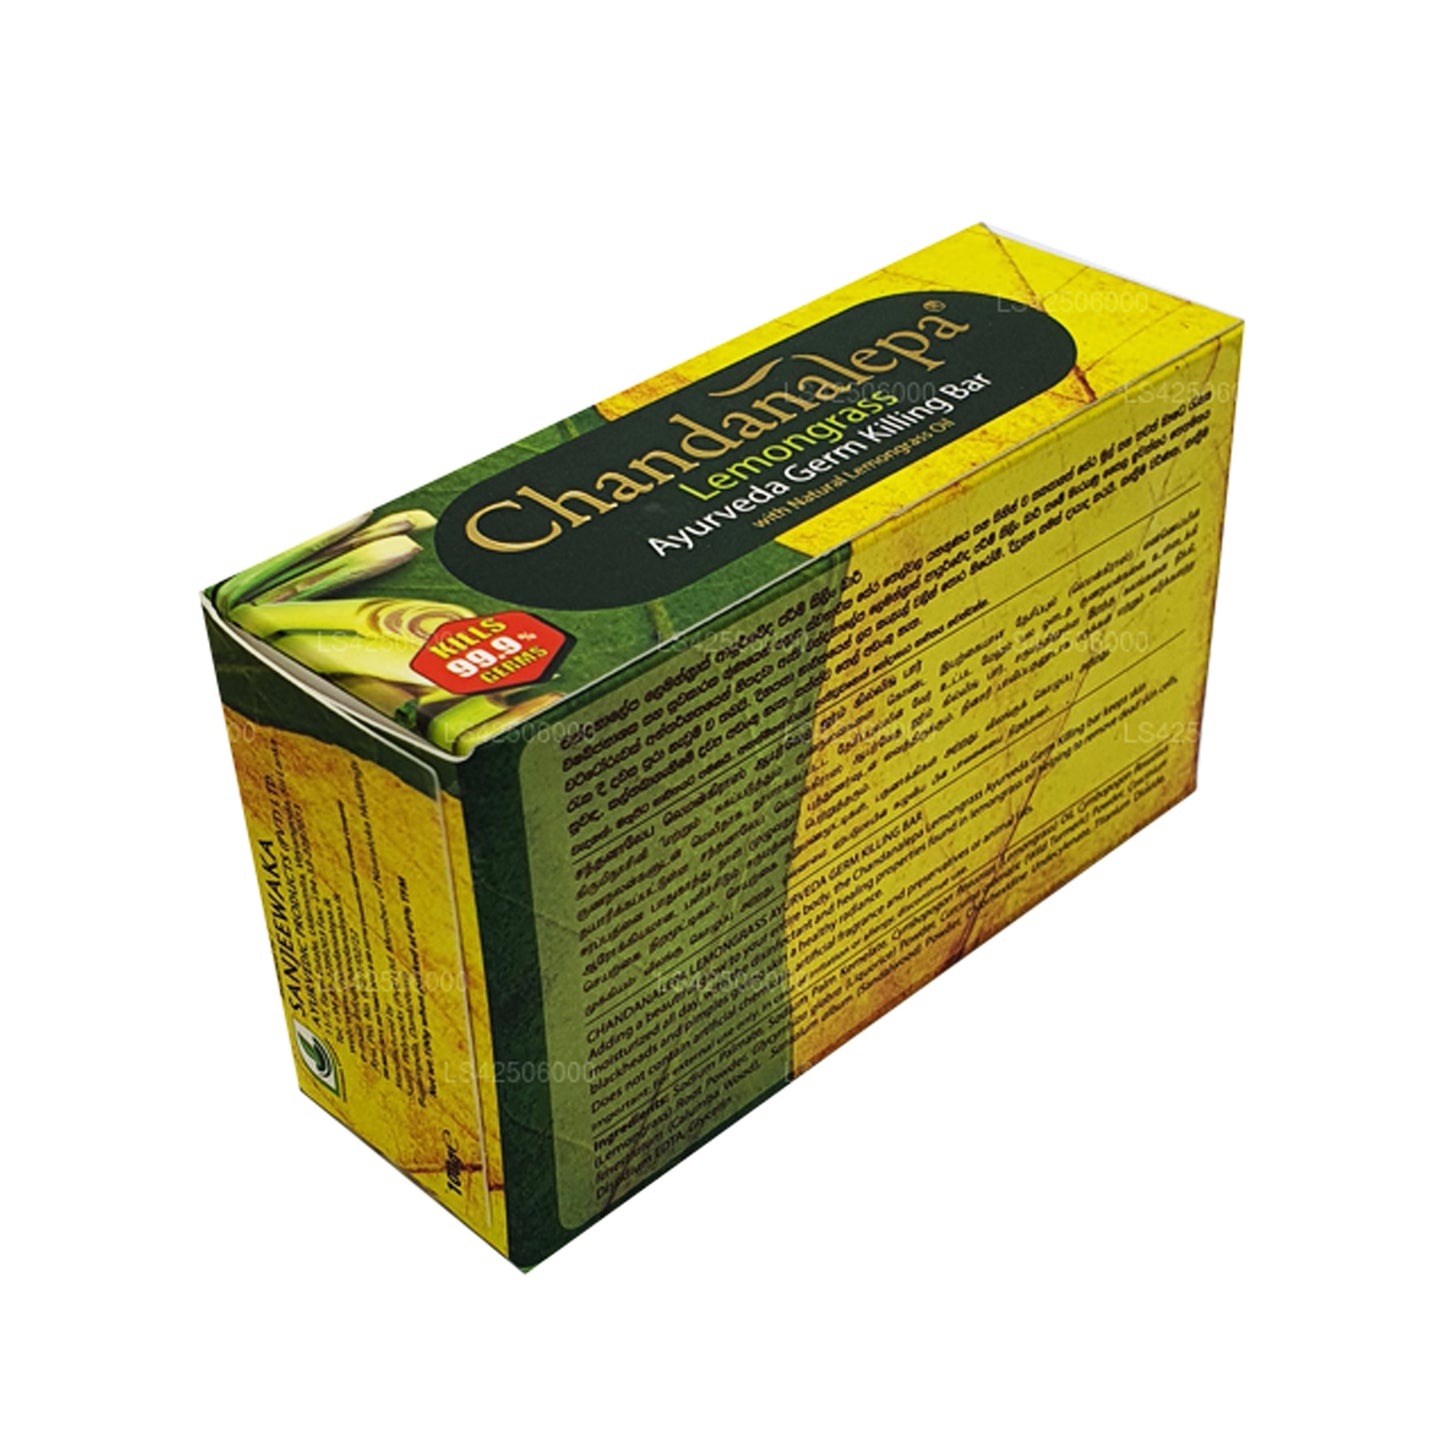 Savon anti-germes ayurvédique Chandanalepa à la citronnelle (100 g)